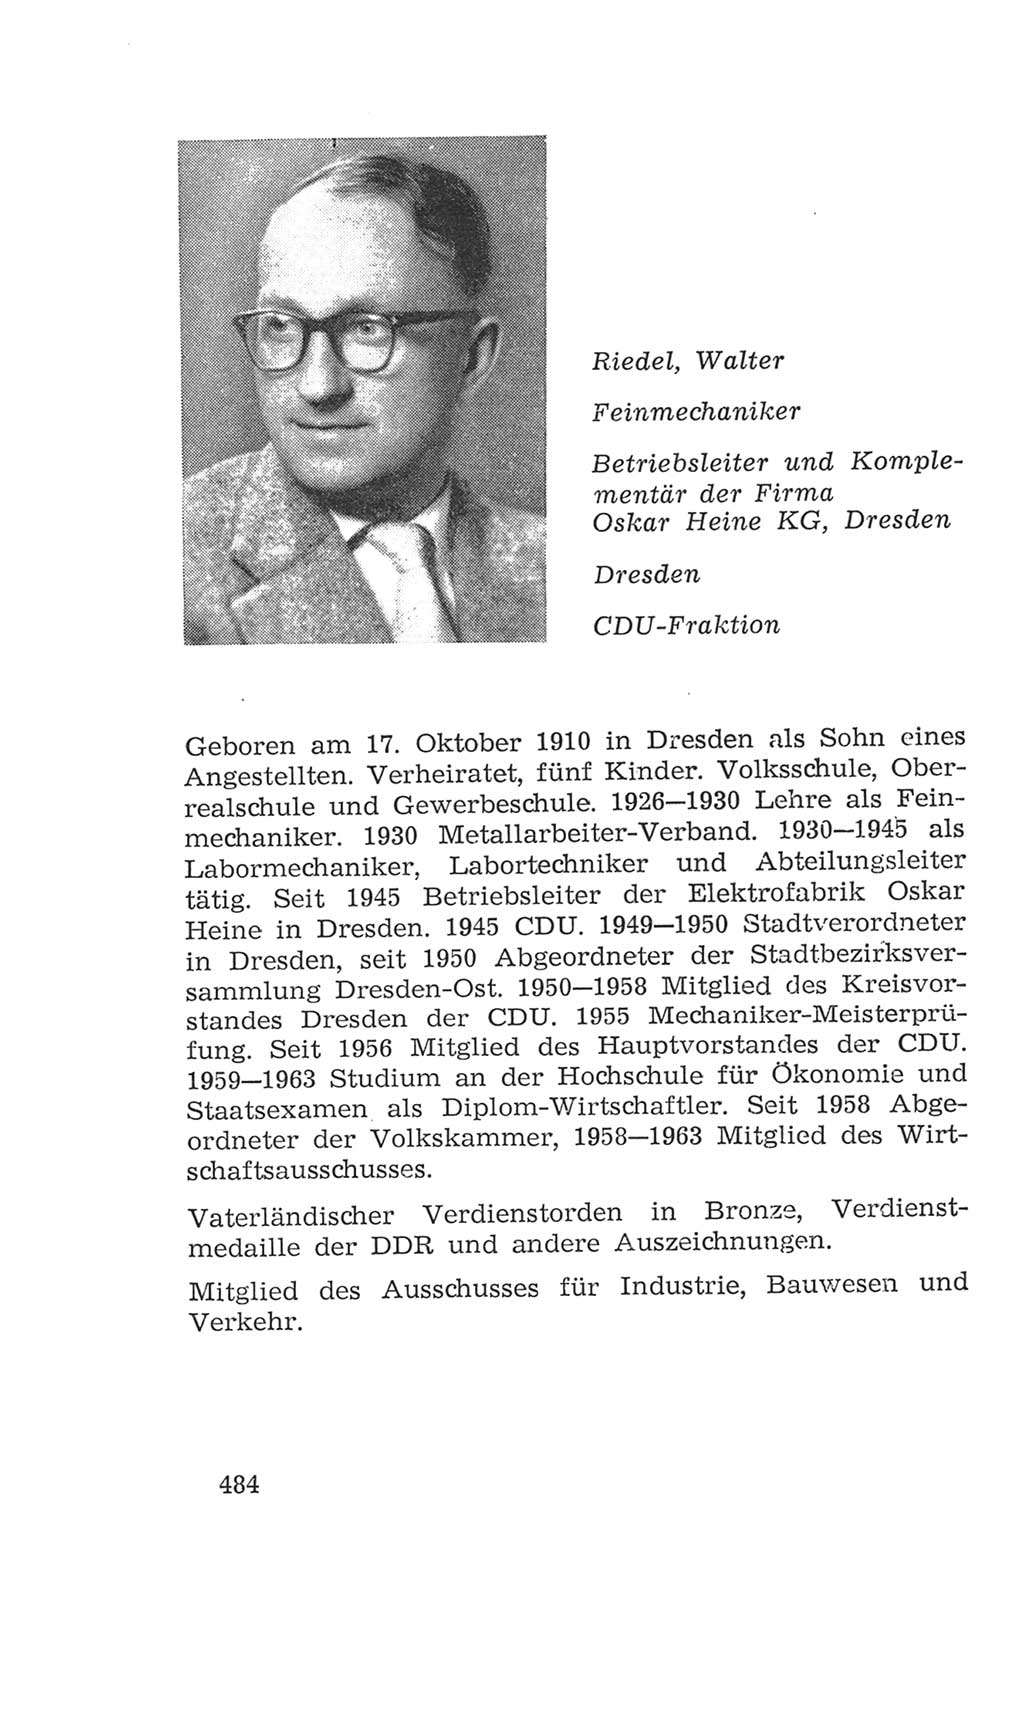 Volkskammer (VK) der Deutschen Demokratischen Republik (DDR), 4. Wahlperiode 1963-1967, Seite 484 (VK. DDR 4. WP. 1963-1967, S. 484)